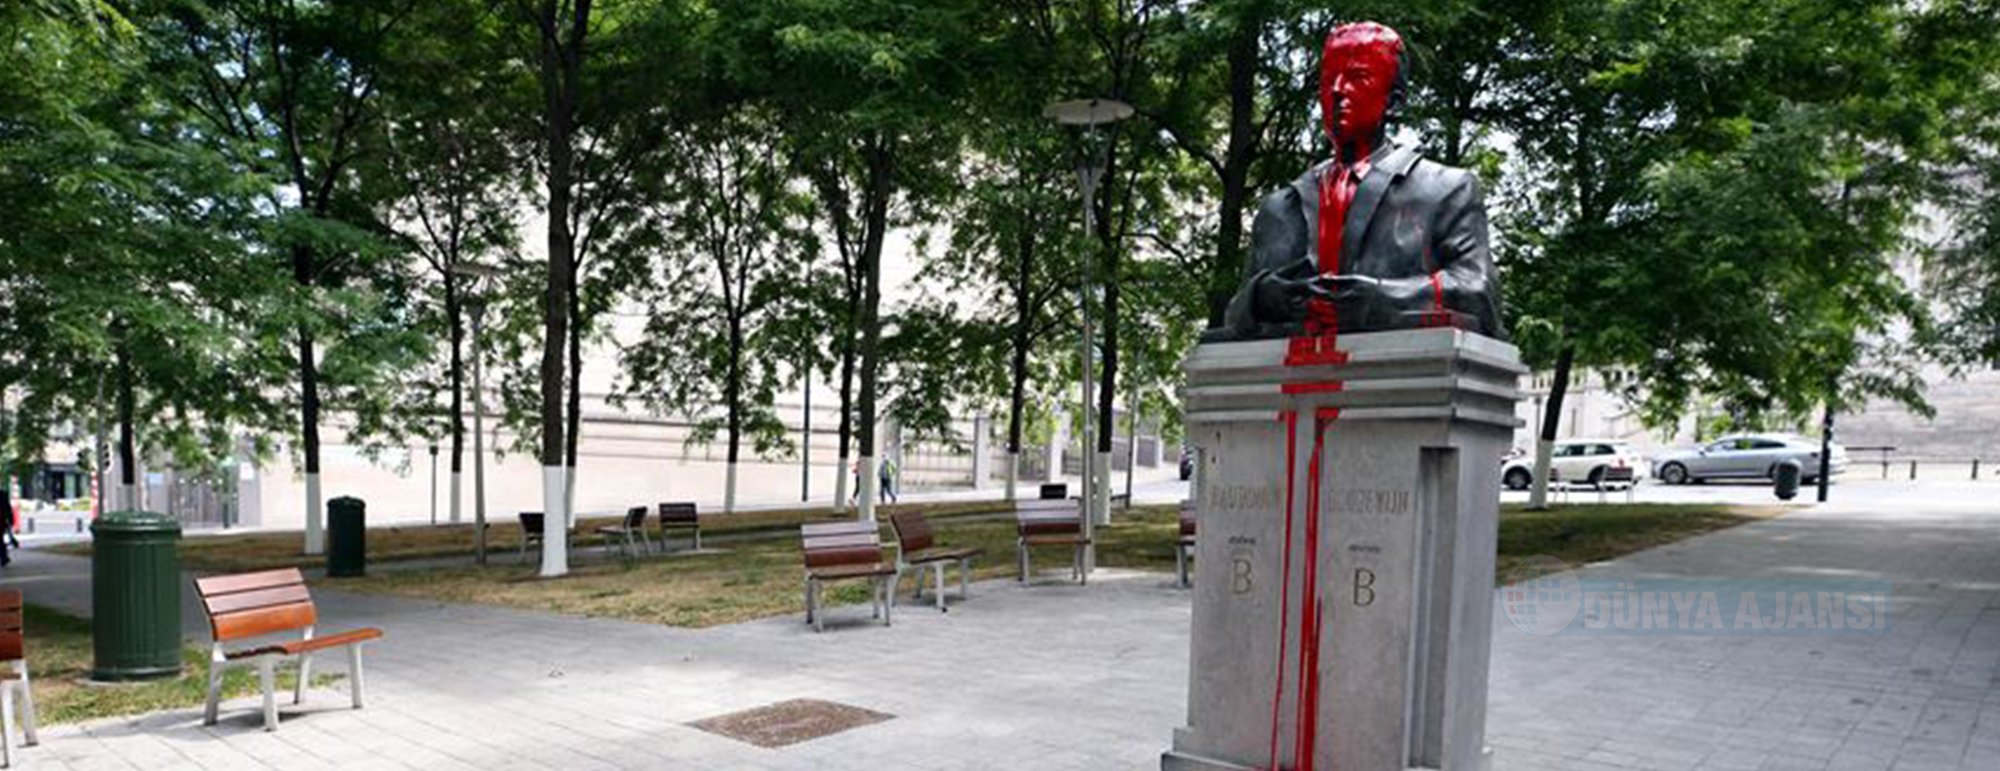 Brüksel'de ırkçı ve sömürgeci geçmişi hatırlatan heykellere saldırılar sürüyor